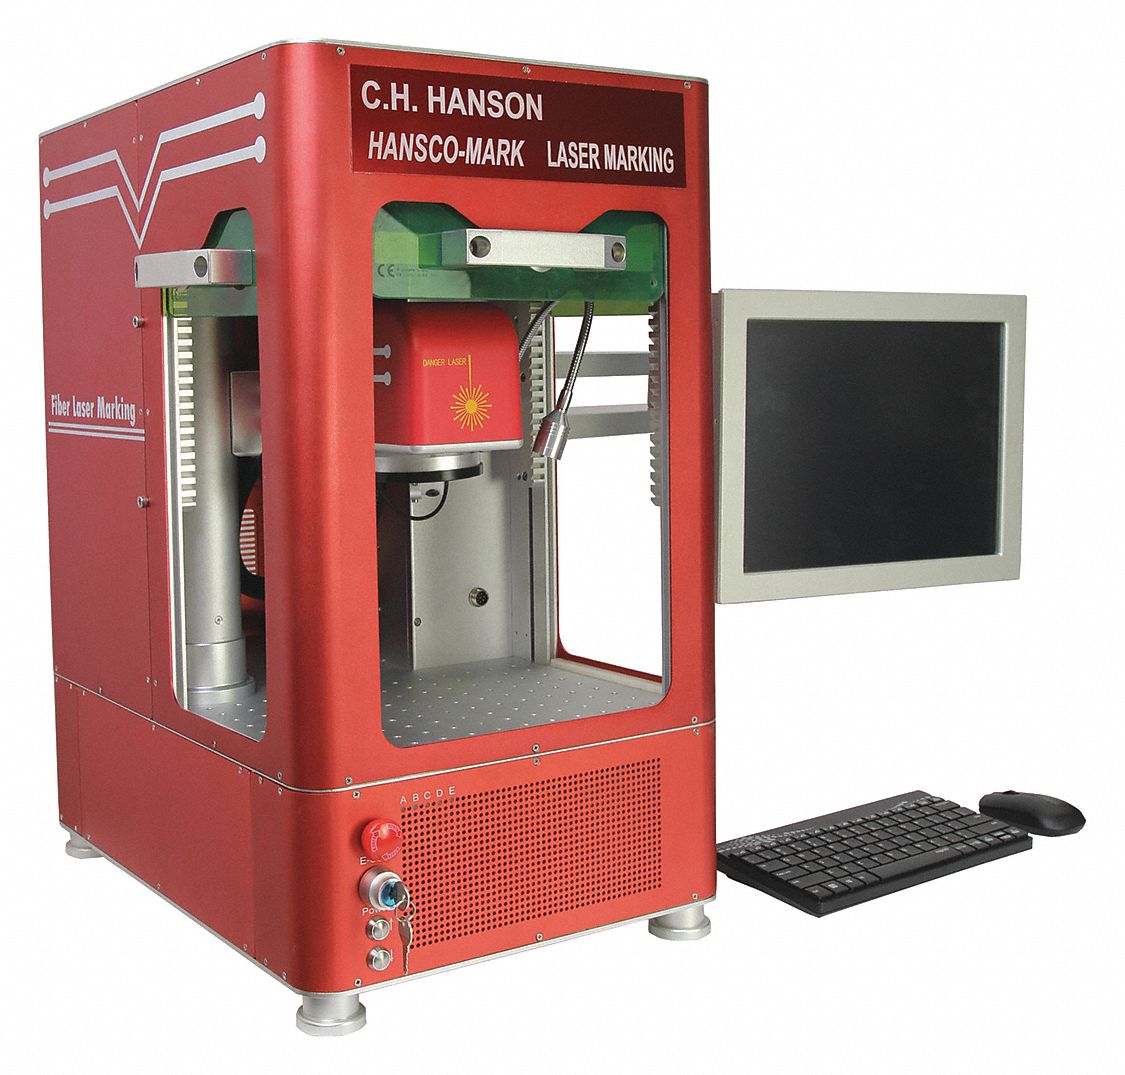 Laser Marking Machine: 110 V, 1 Phase, 60 Hz, 4 in x 4 in Marking Area